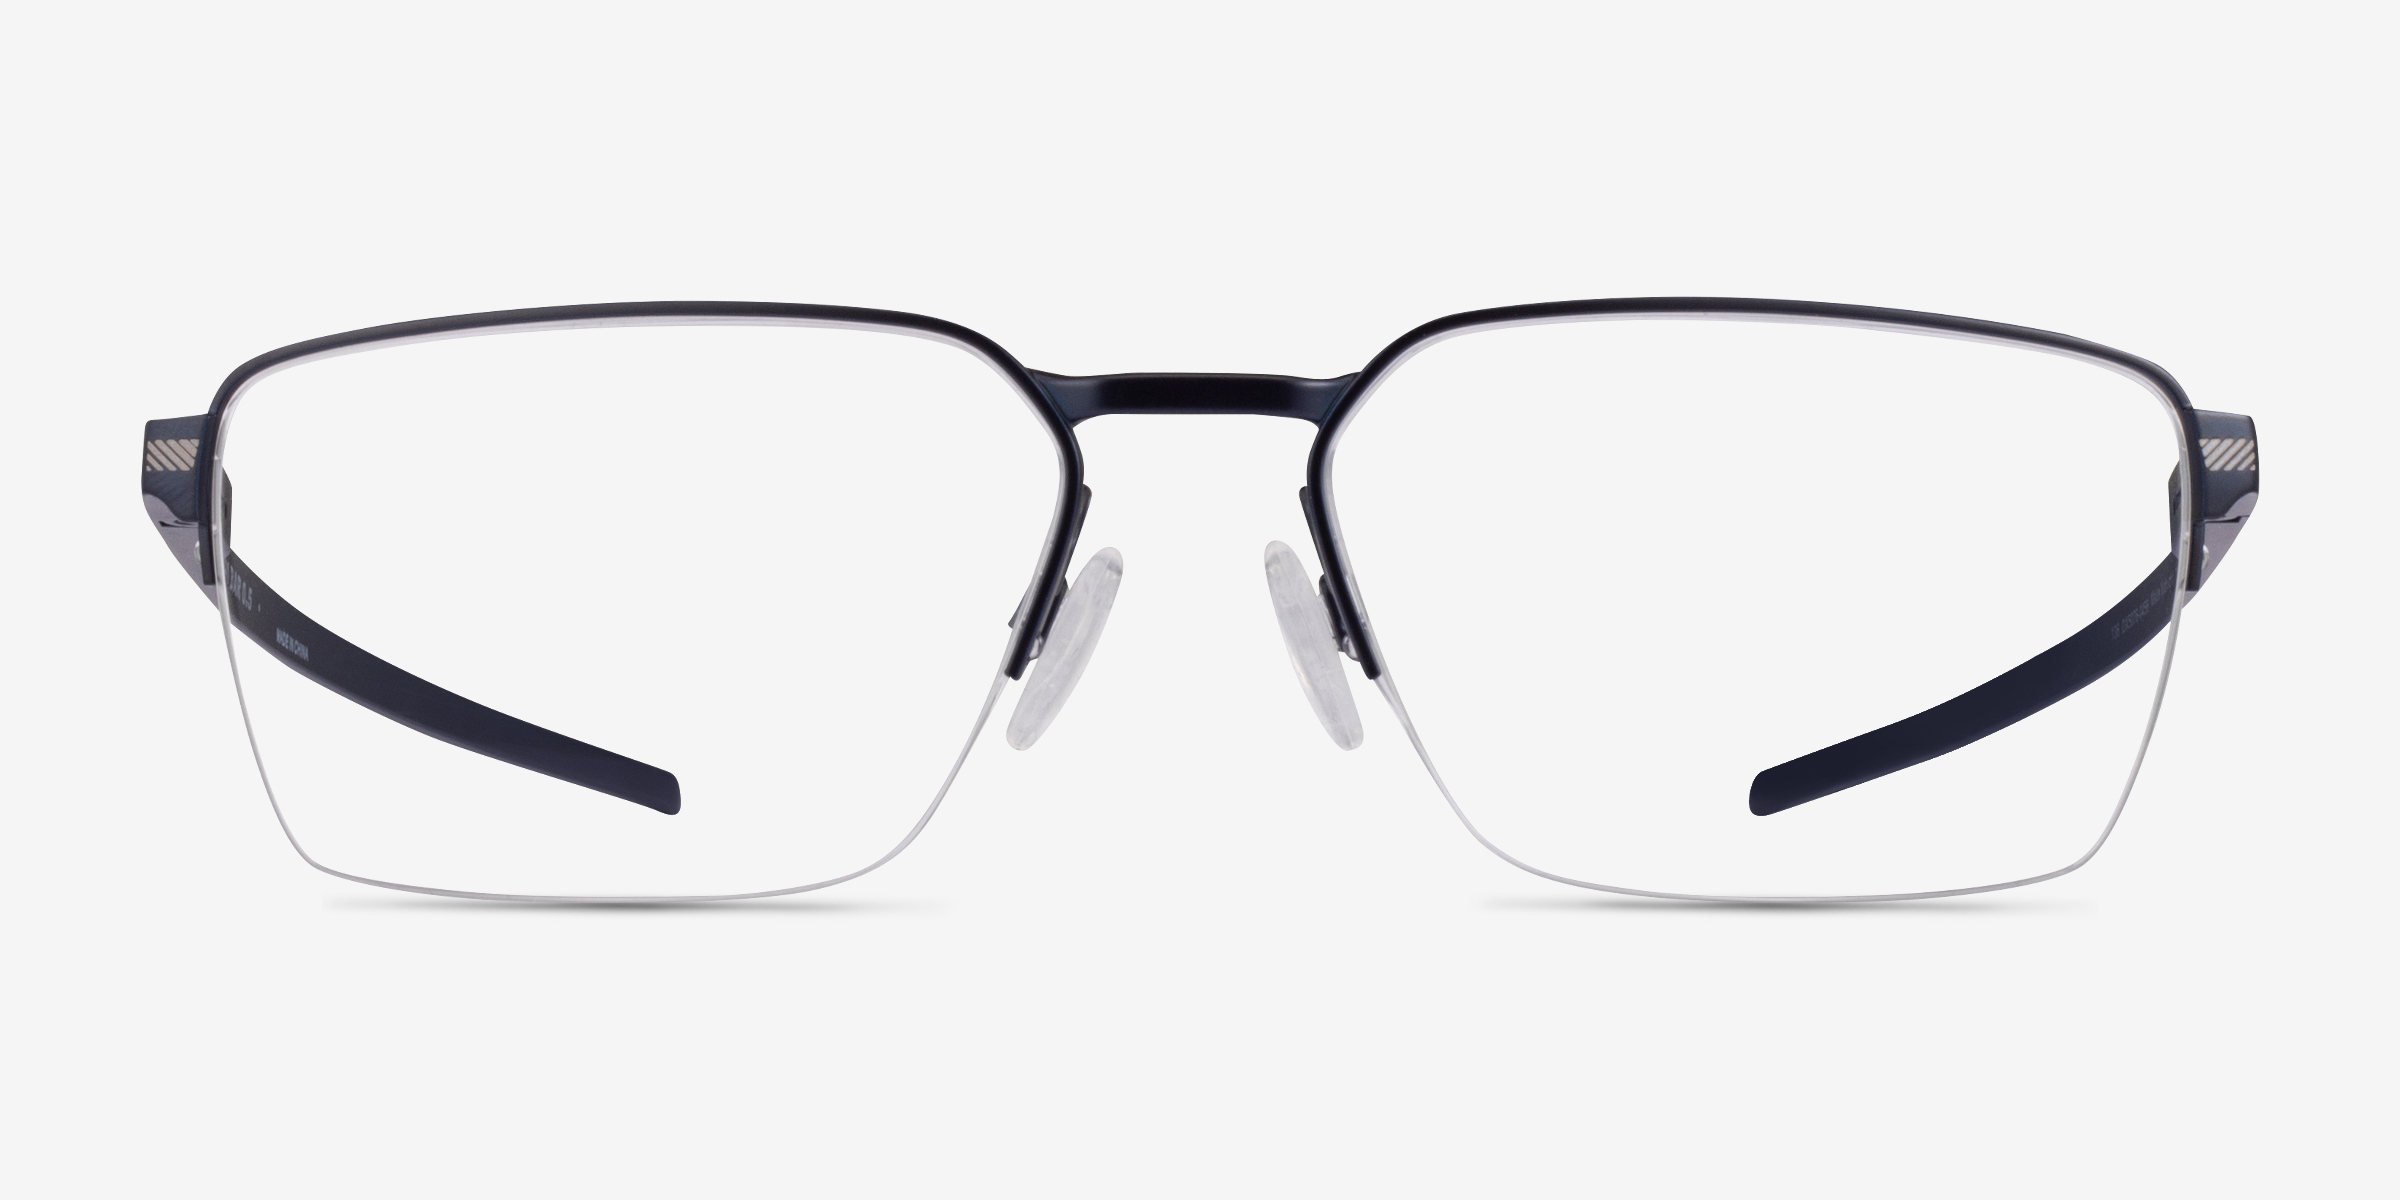 Oakley Sway Bar 0.5 - Rectangle Matte Midnight Frame Glasses For Men ...